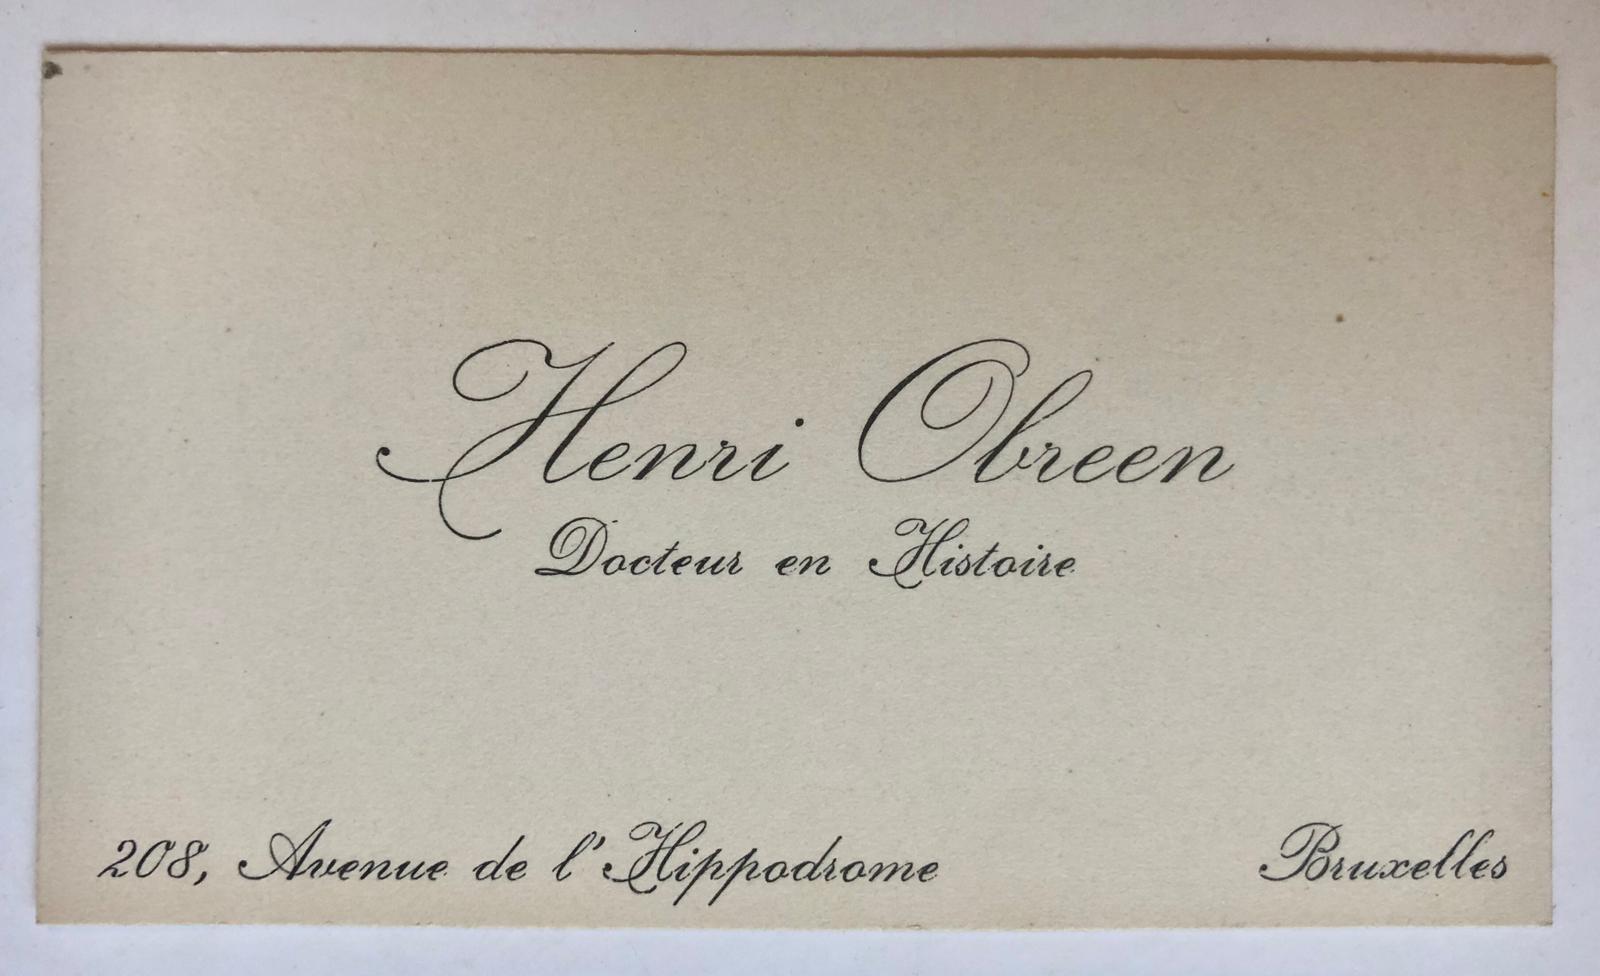  - [BUSINESS CARD, OBREEN] Visitekaartje van Henri Obreen, Brussel, met in pen het verzoek om een recensie, 1 stuk.